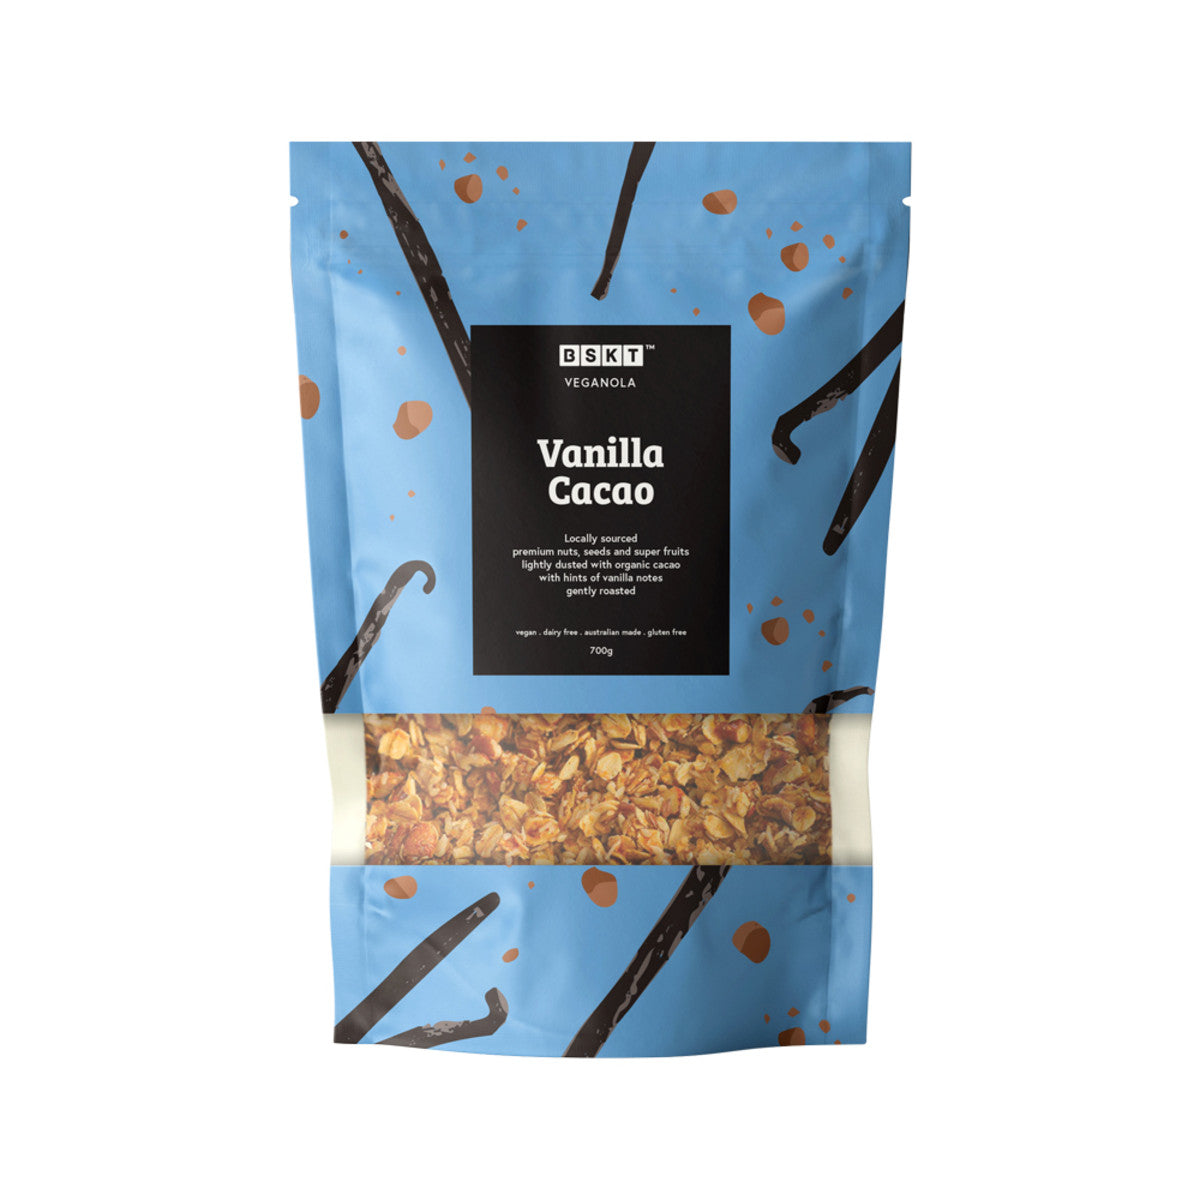 BSKT - Veganola Vanilla Cacao